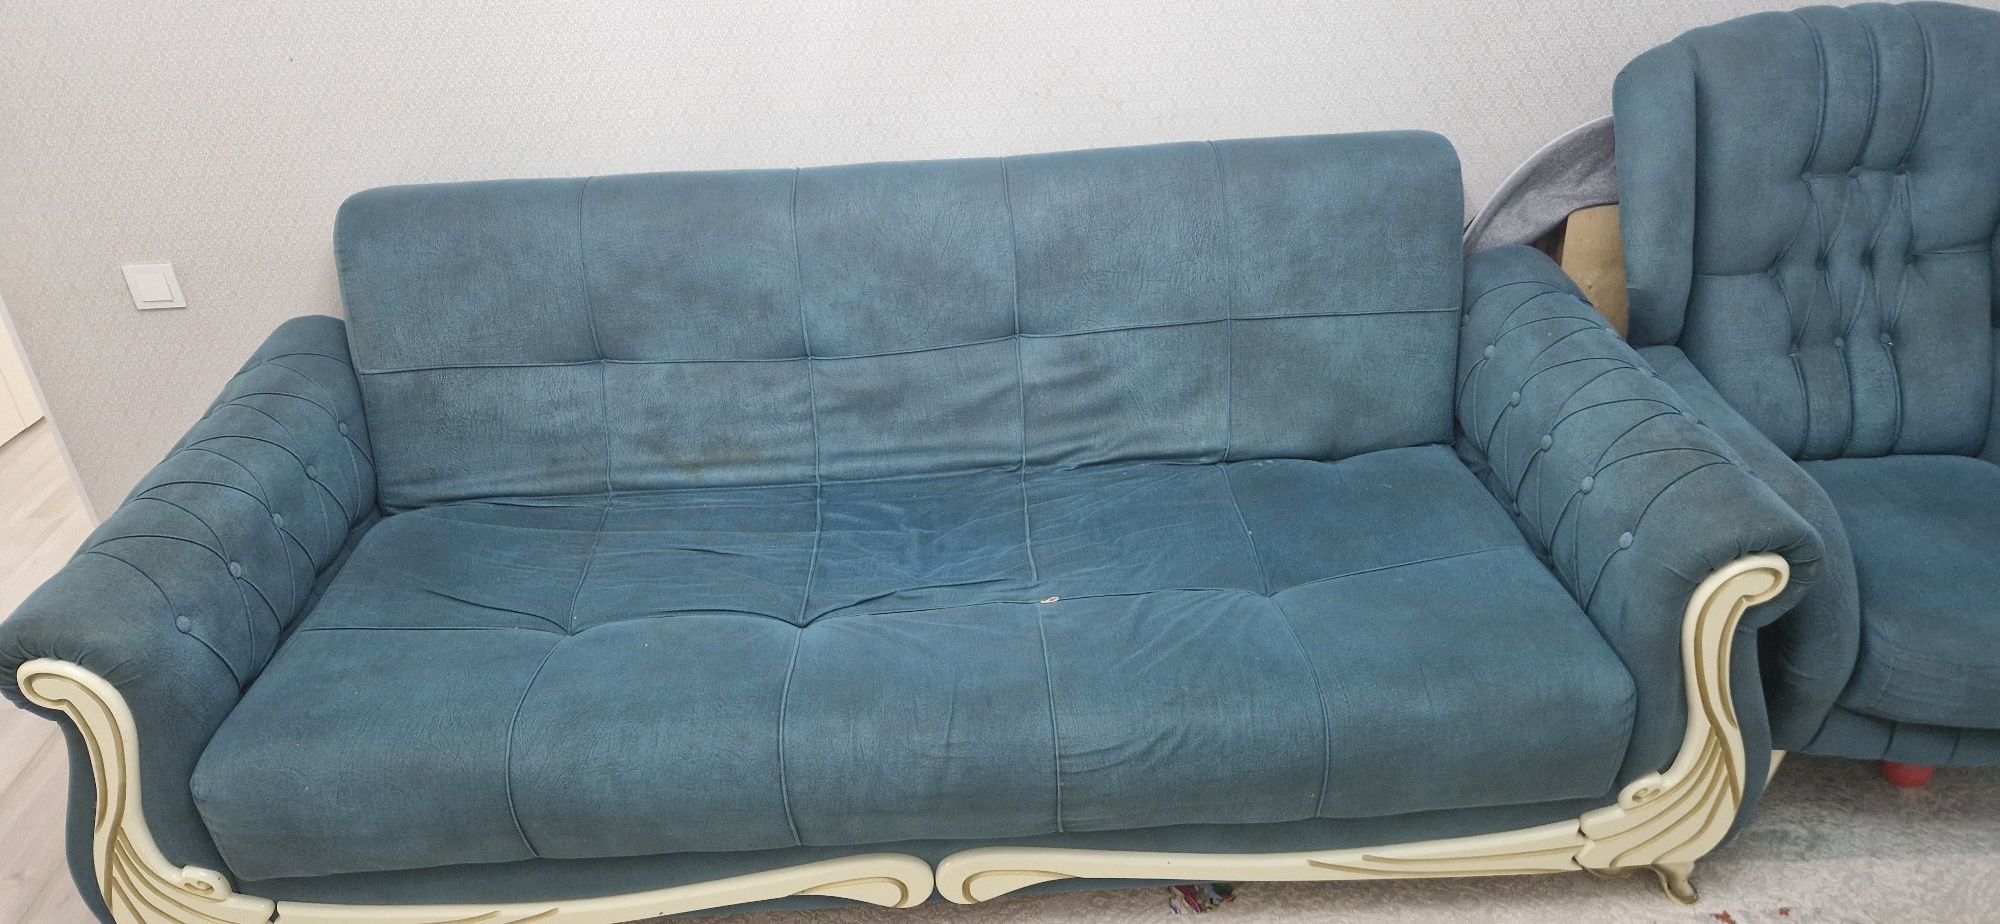 диван с креслом,  мебель, мягкая мебель, кресло, уголок